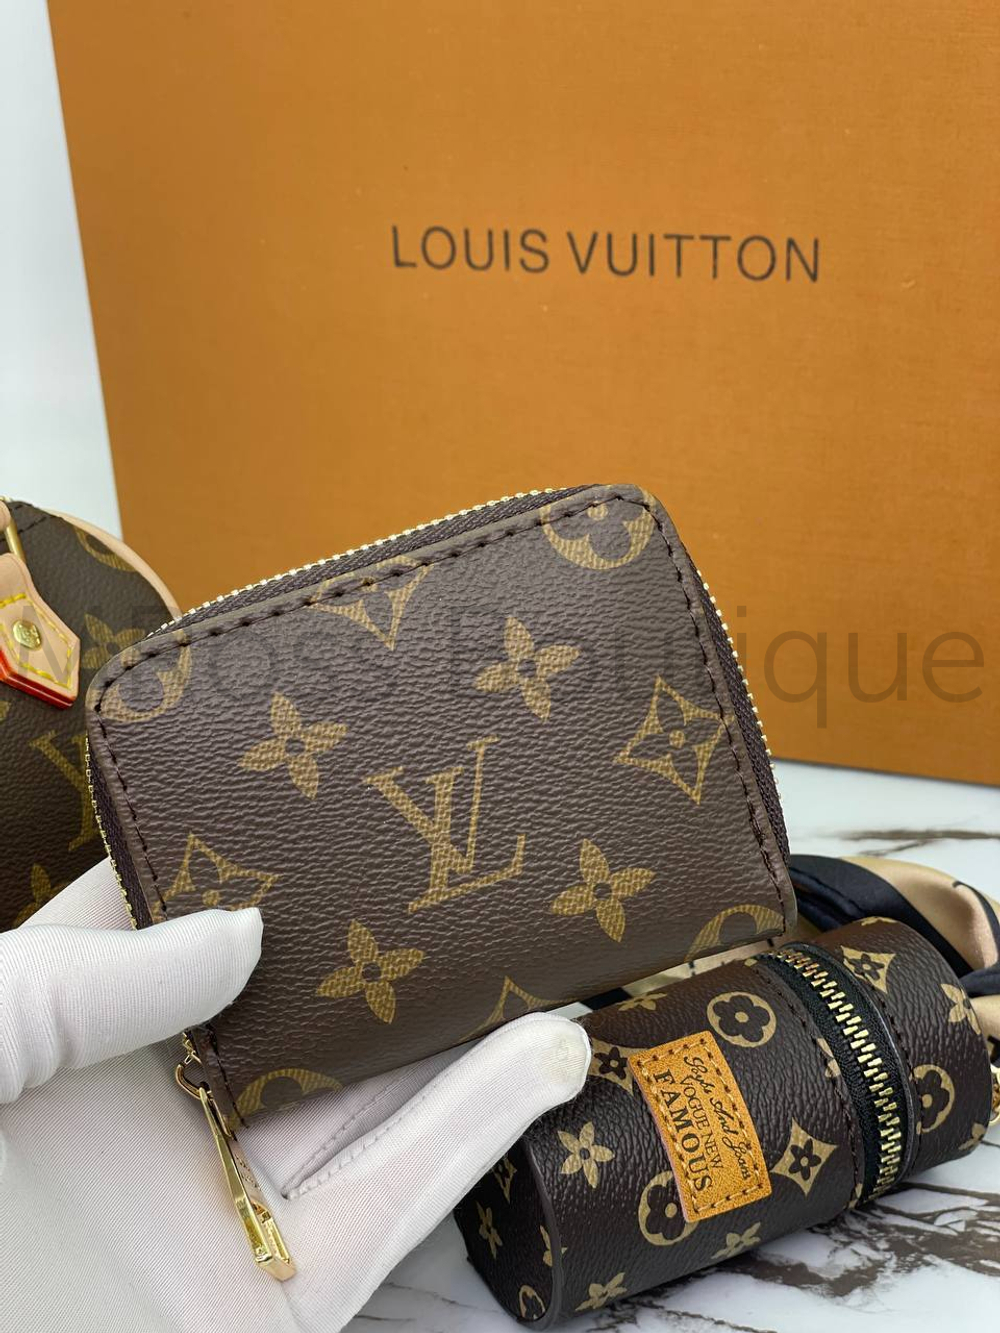 Набор Louis Vuitton 3 в 1